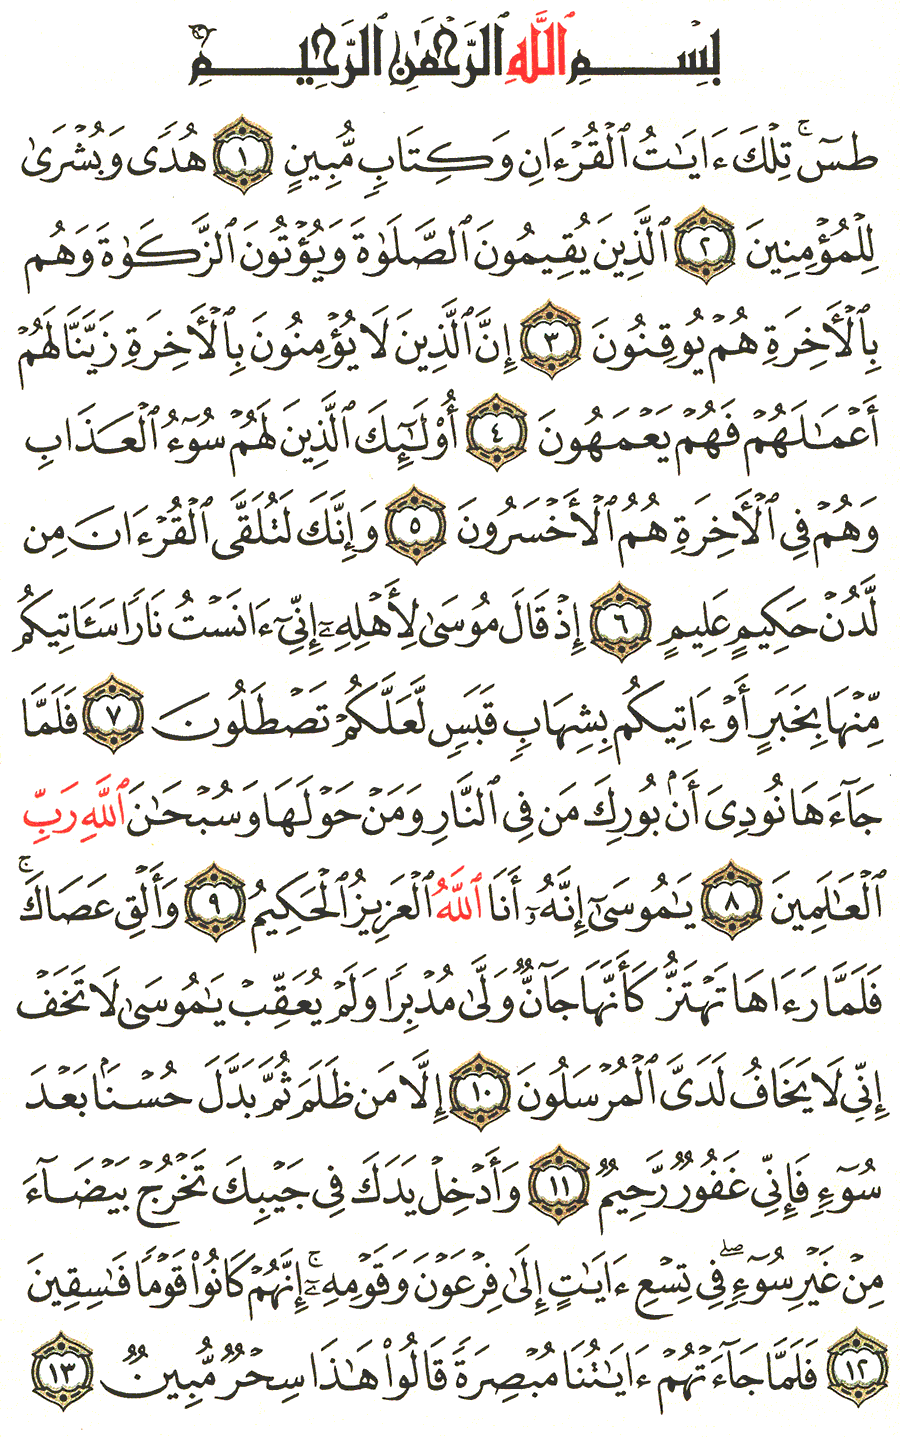 الصفحة رقم 377  من القرآن الكريم مكتوبة من المصحف